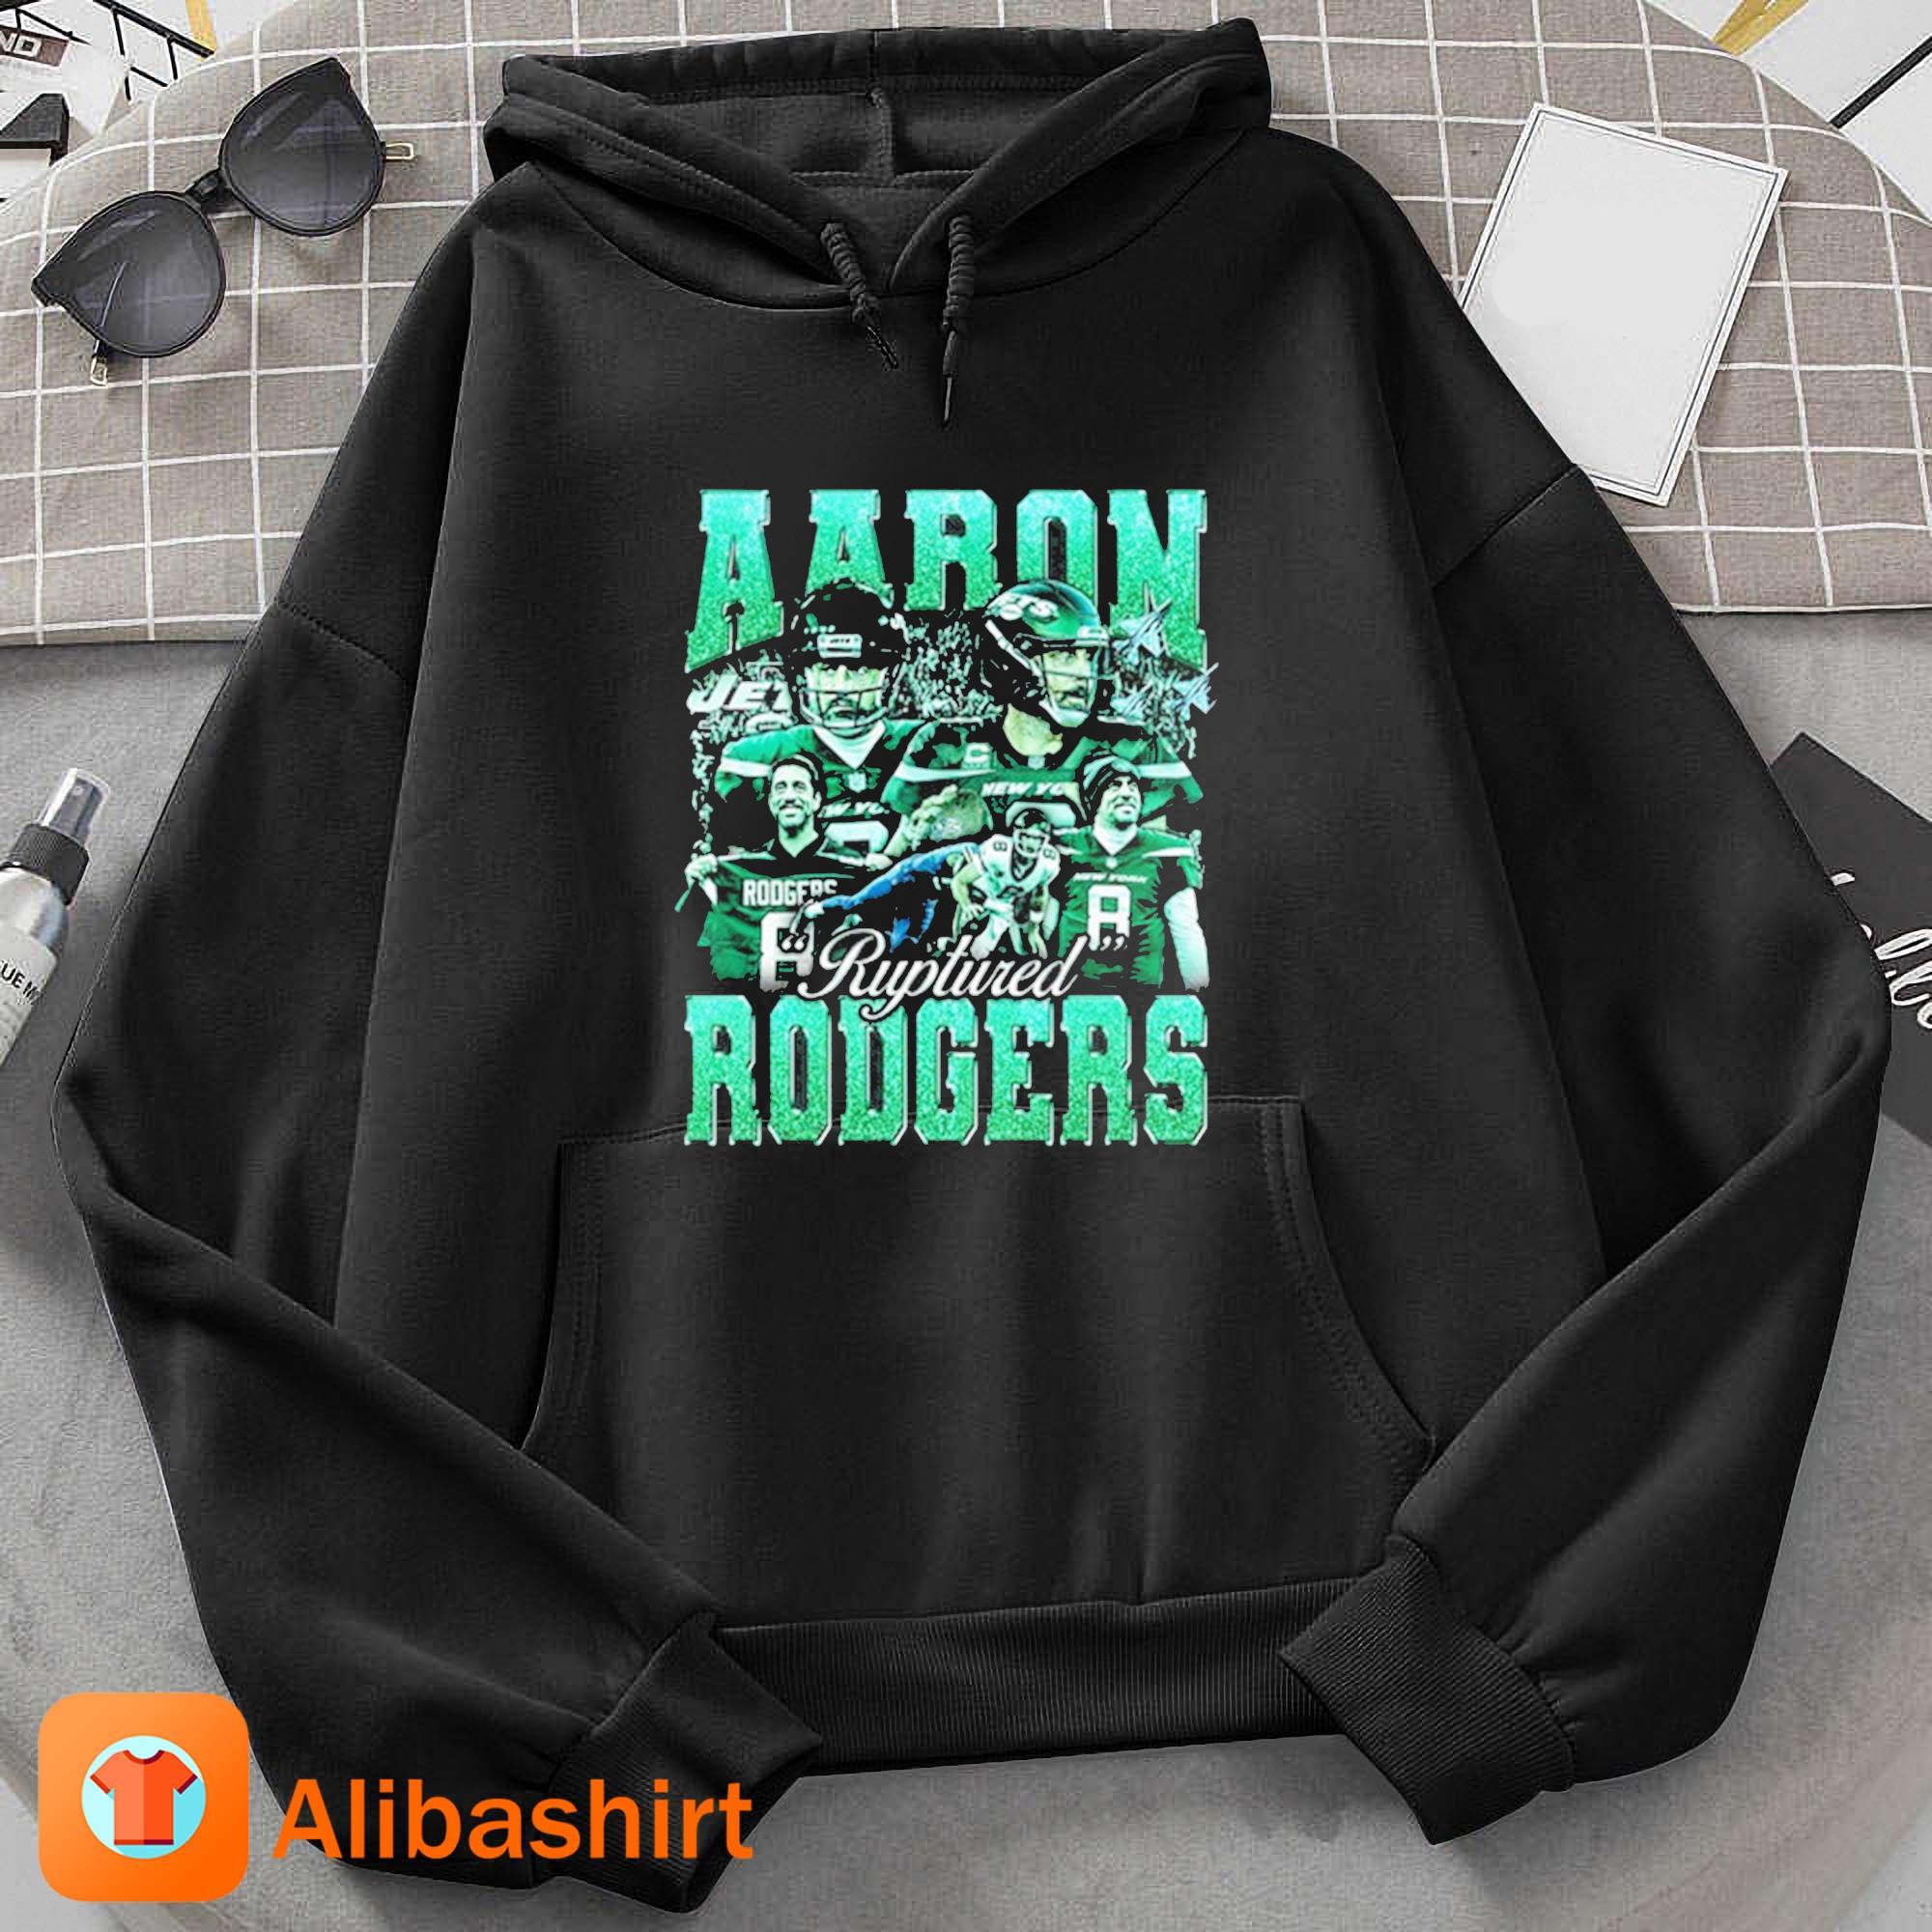 Aaron Ruptured Rodgers T-Shirt Hoodie